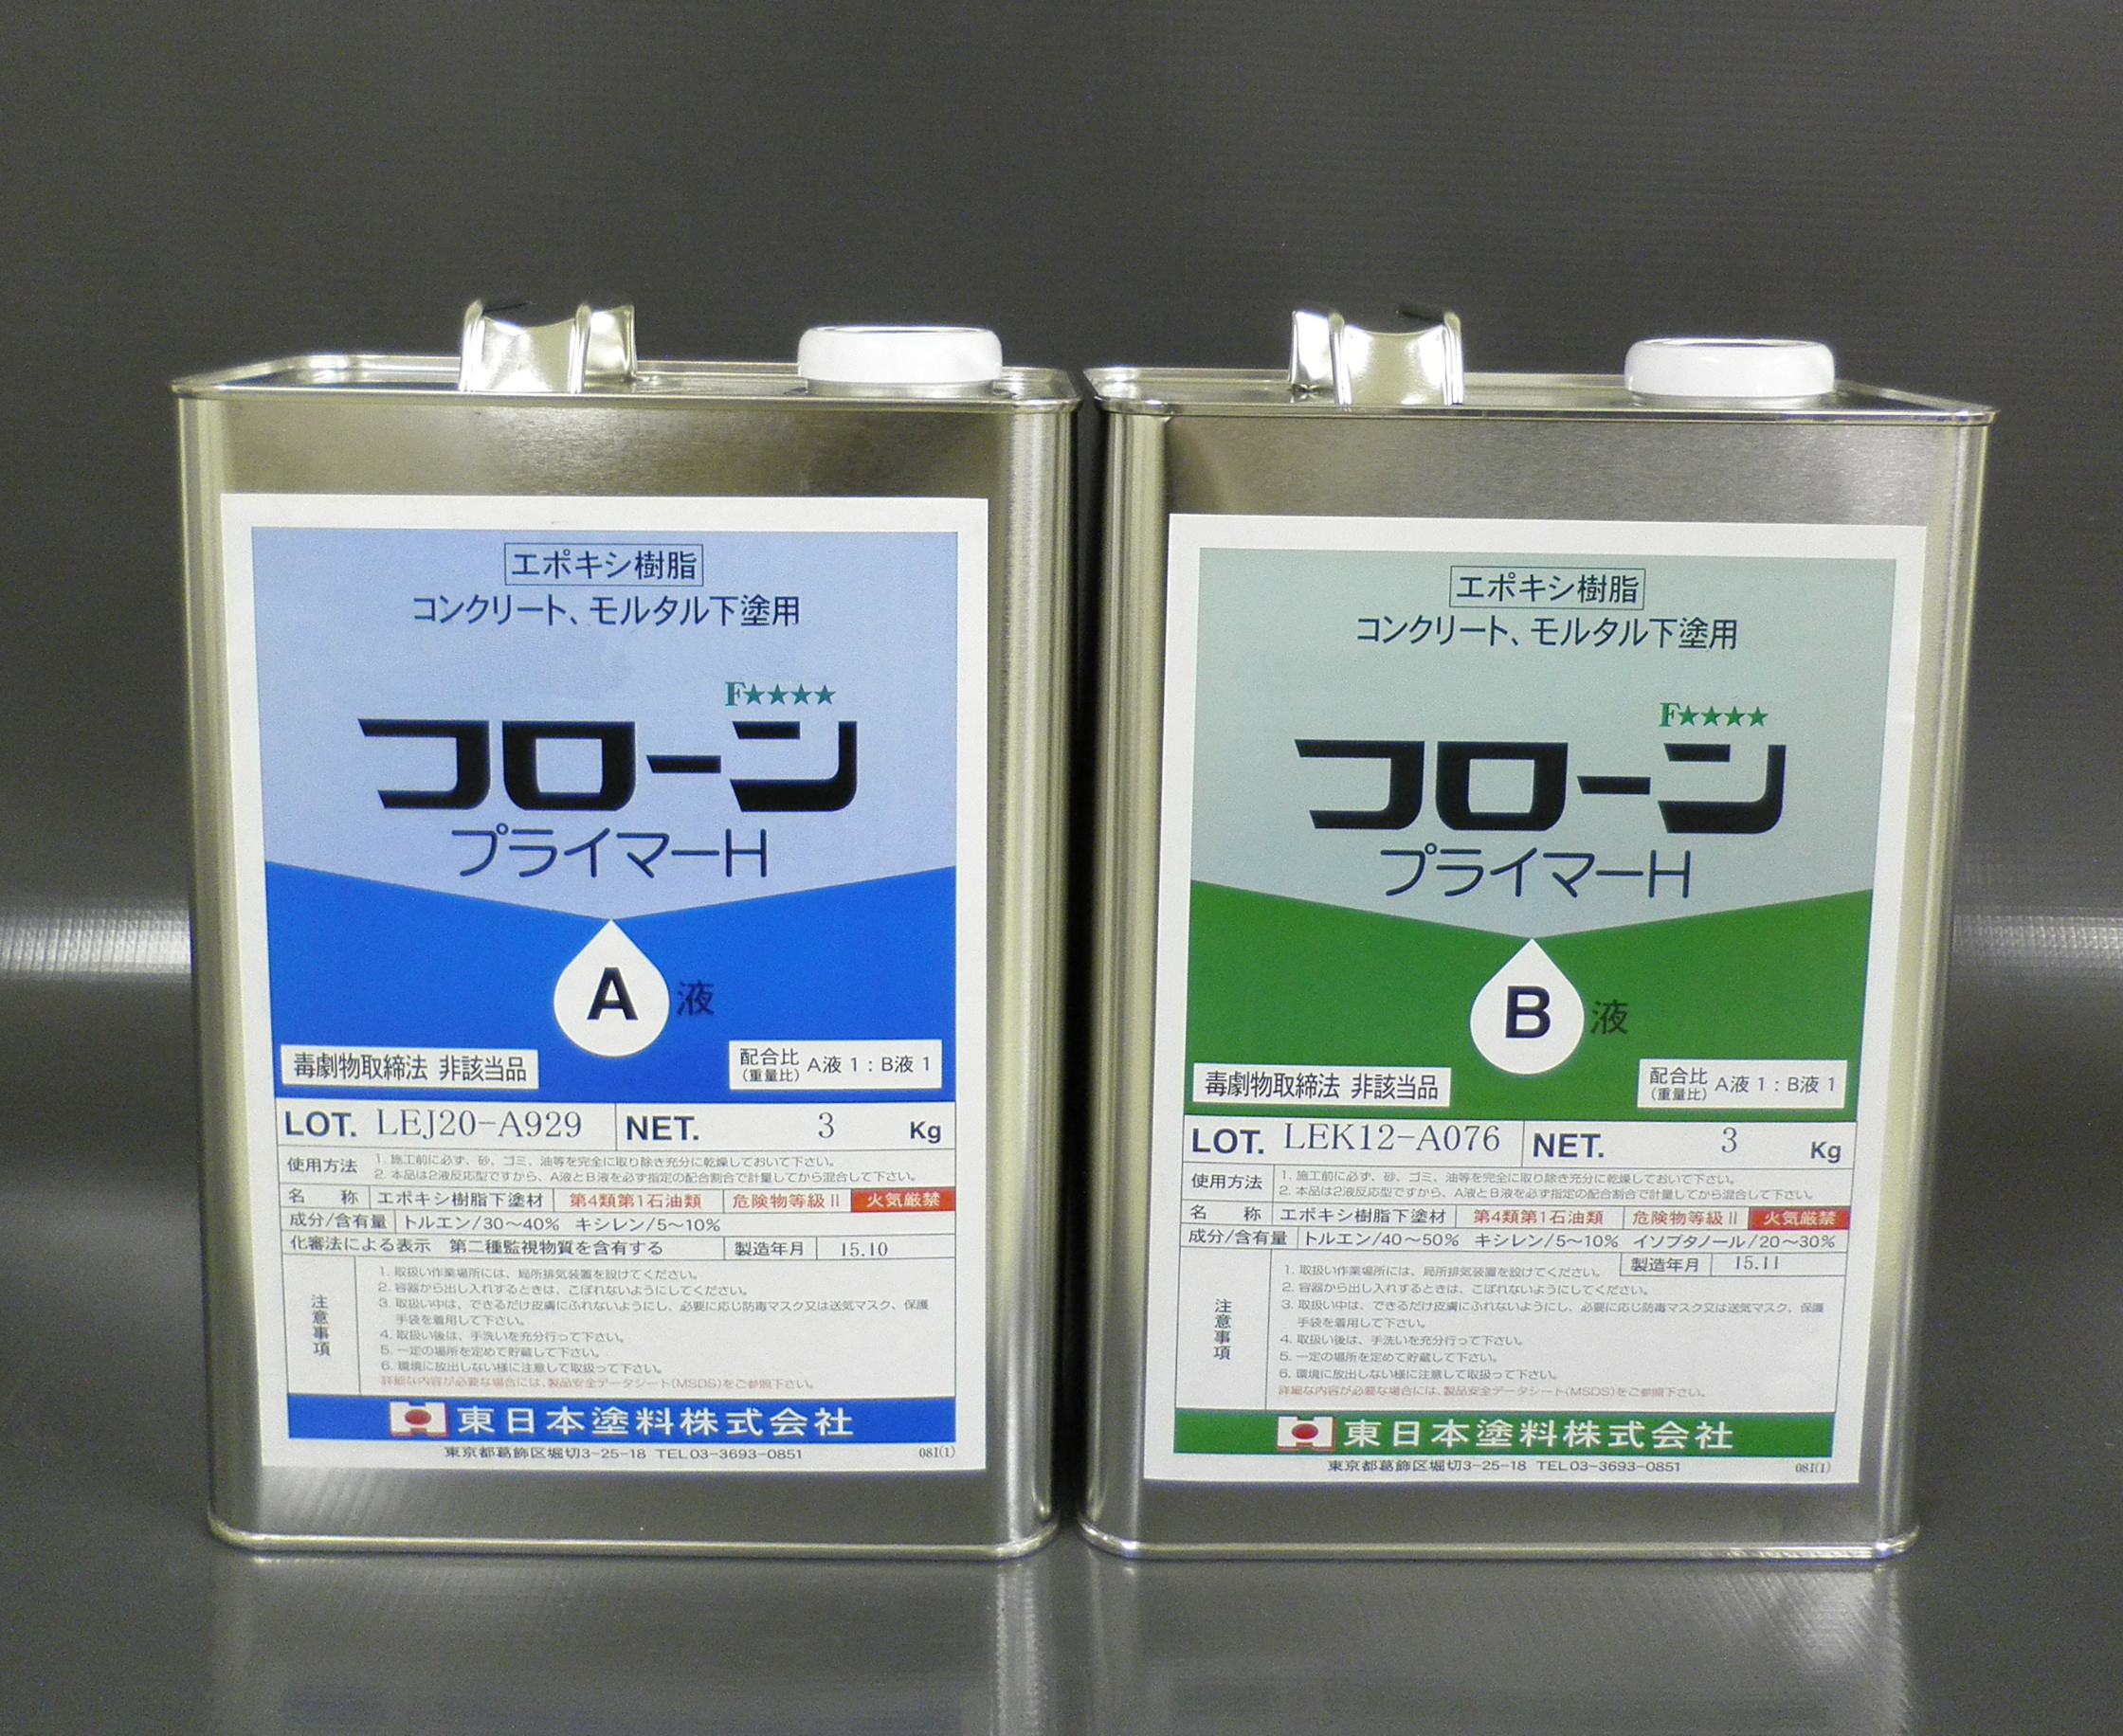 保存版】 フローンプライマーH 12kgセット 東日本塗料 溶剤系プライマー